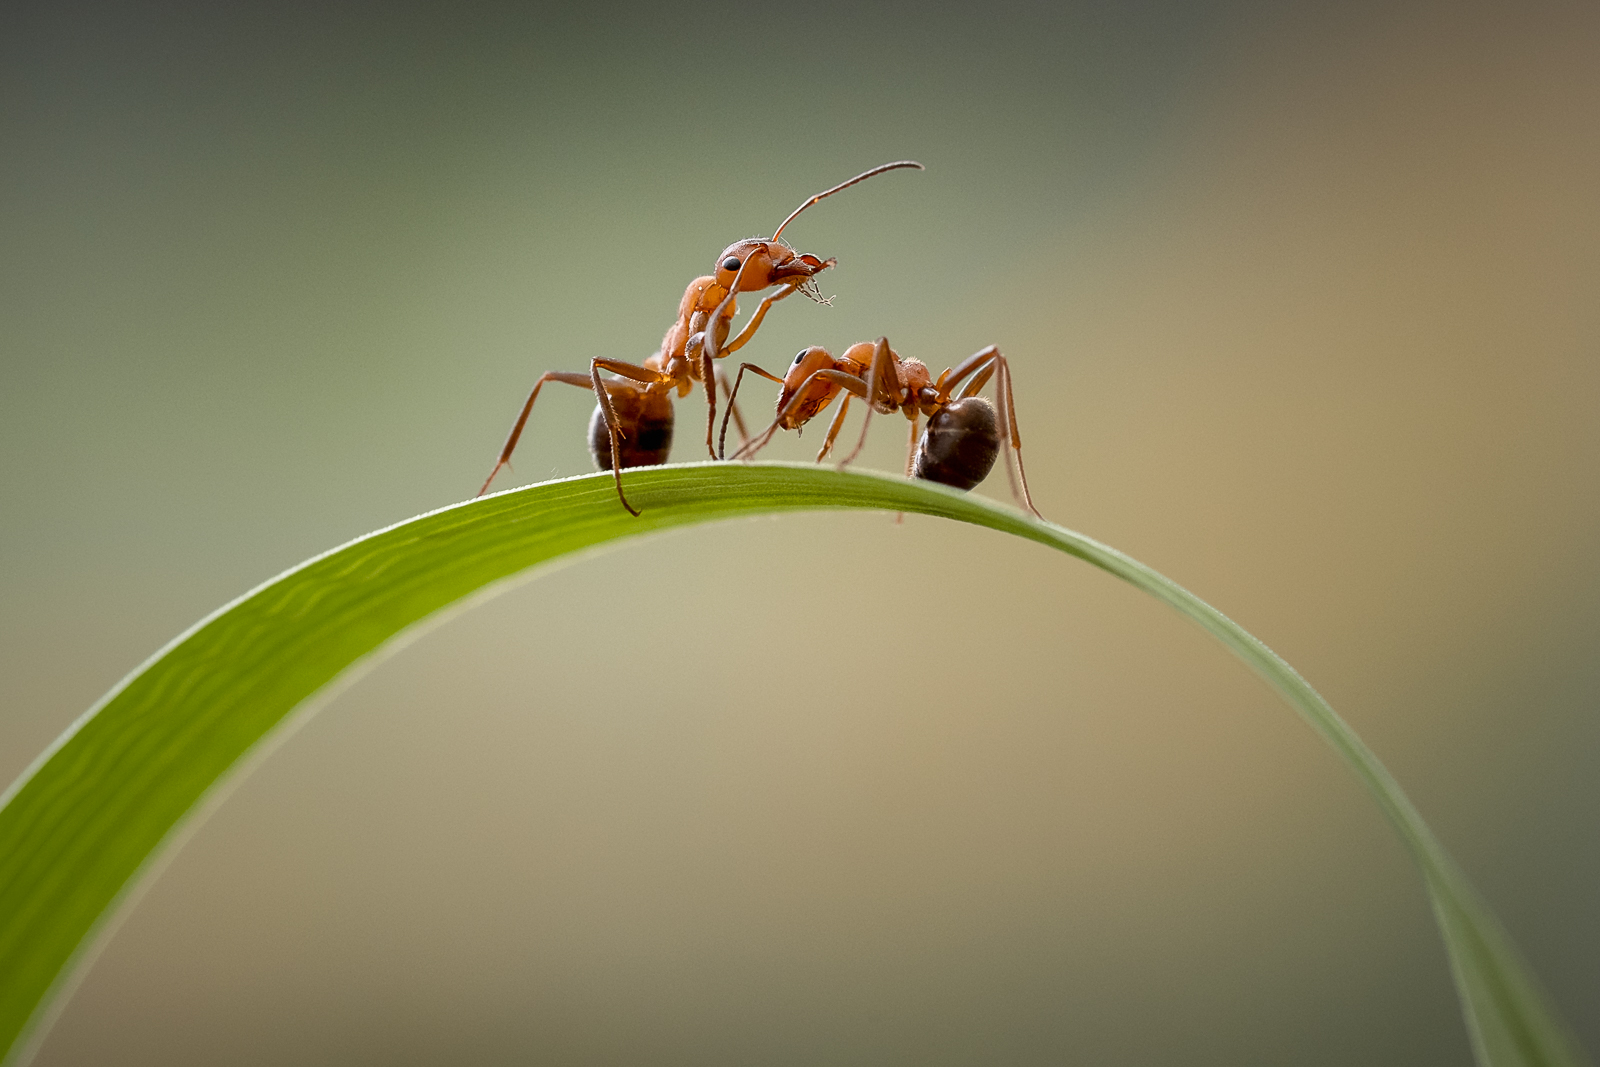 Mravenčí výchovná metoda.